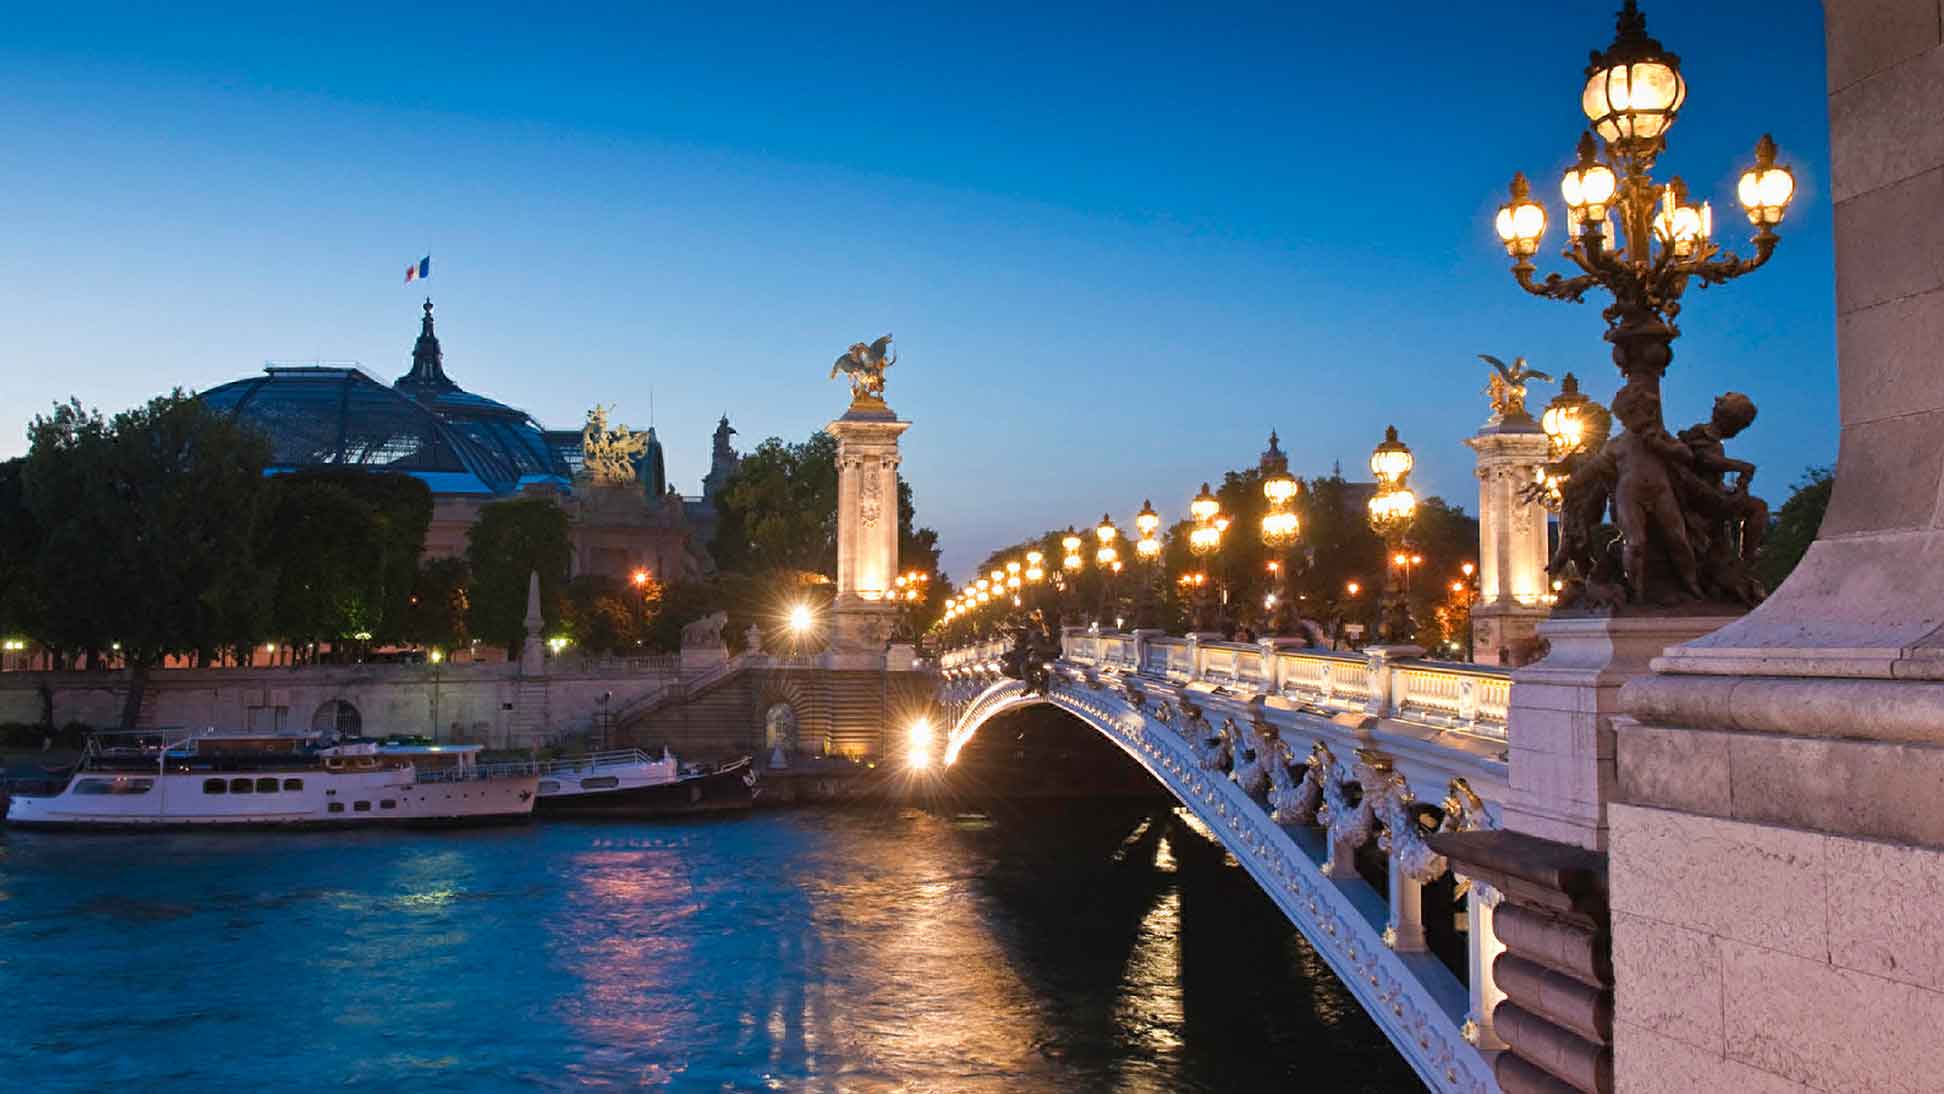 Bridge over the River Seine in Paris, France